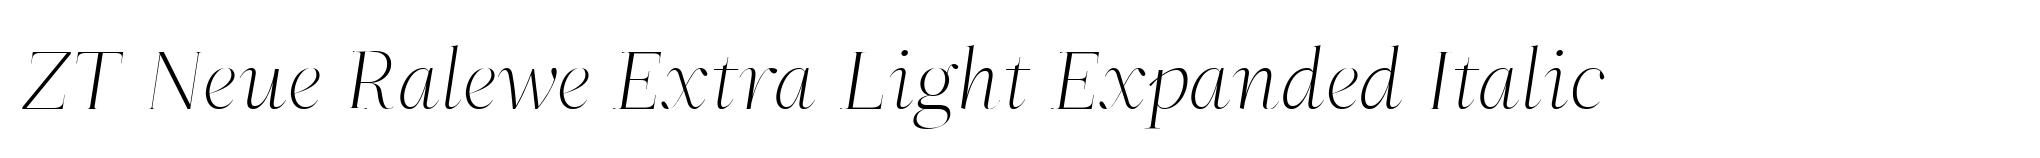 ZT Neue Ralewe Extra Light Expanded Italic image